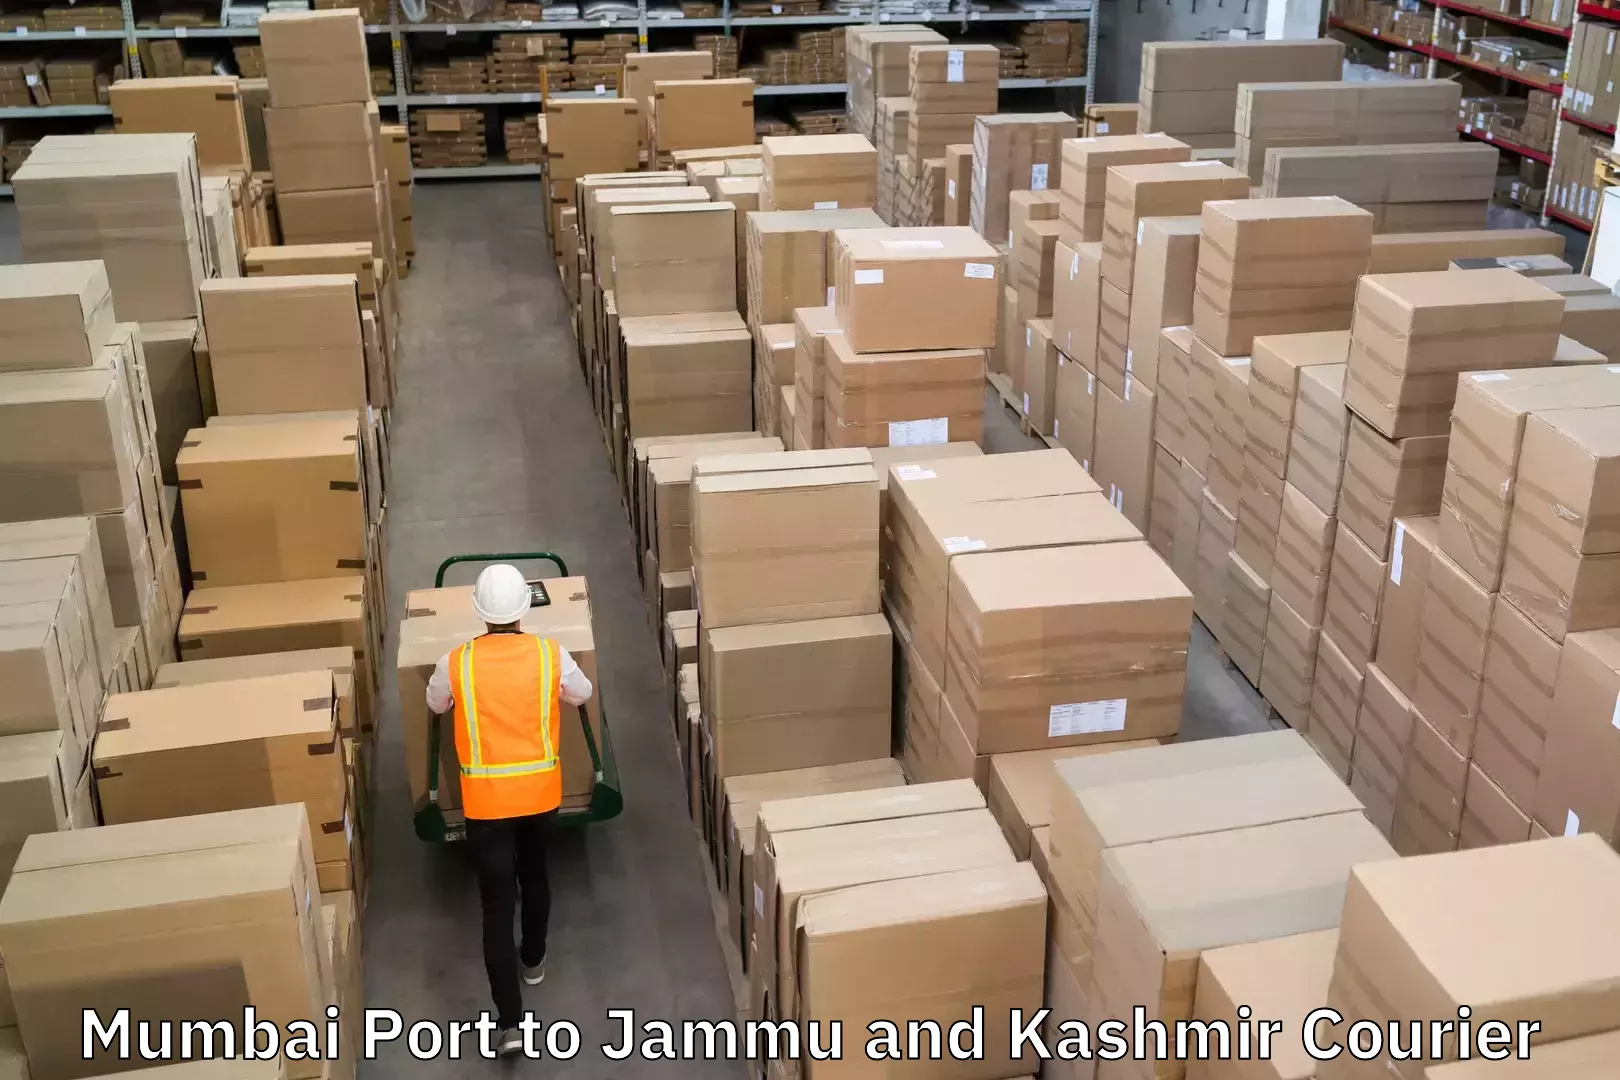 Custom courier rates Mumbai Port to Jammu and Kashmir